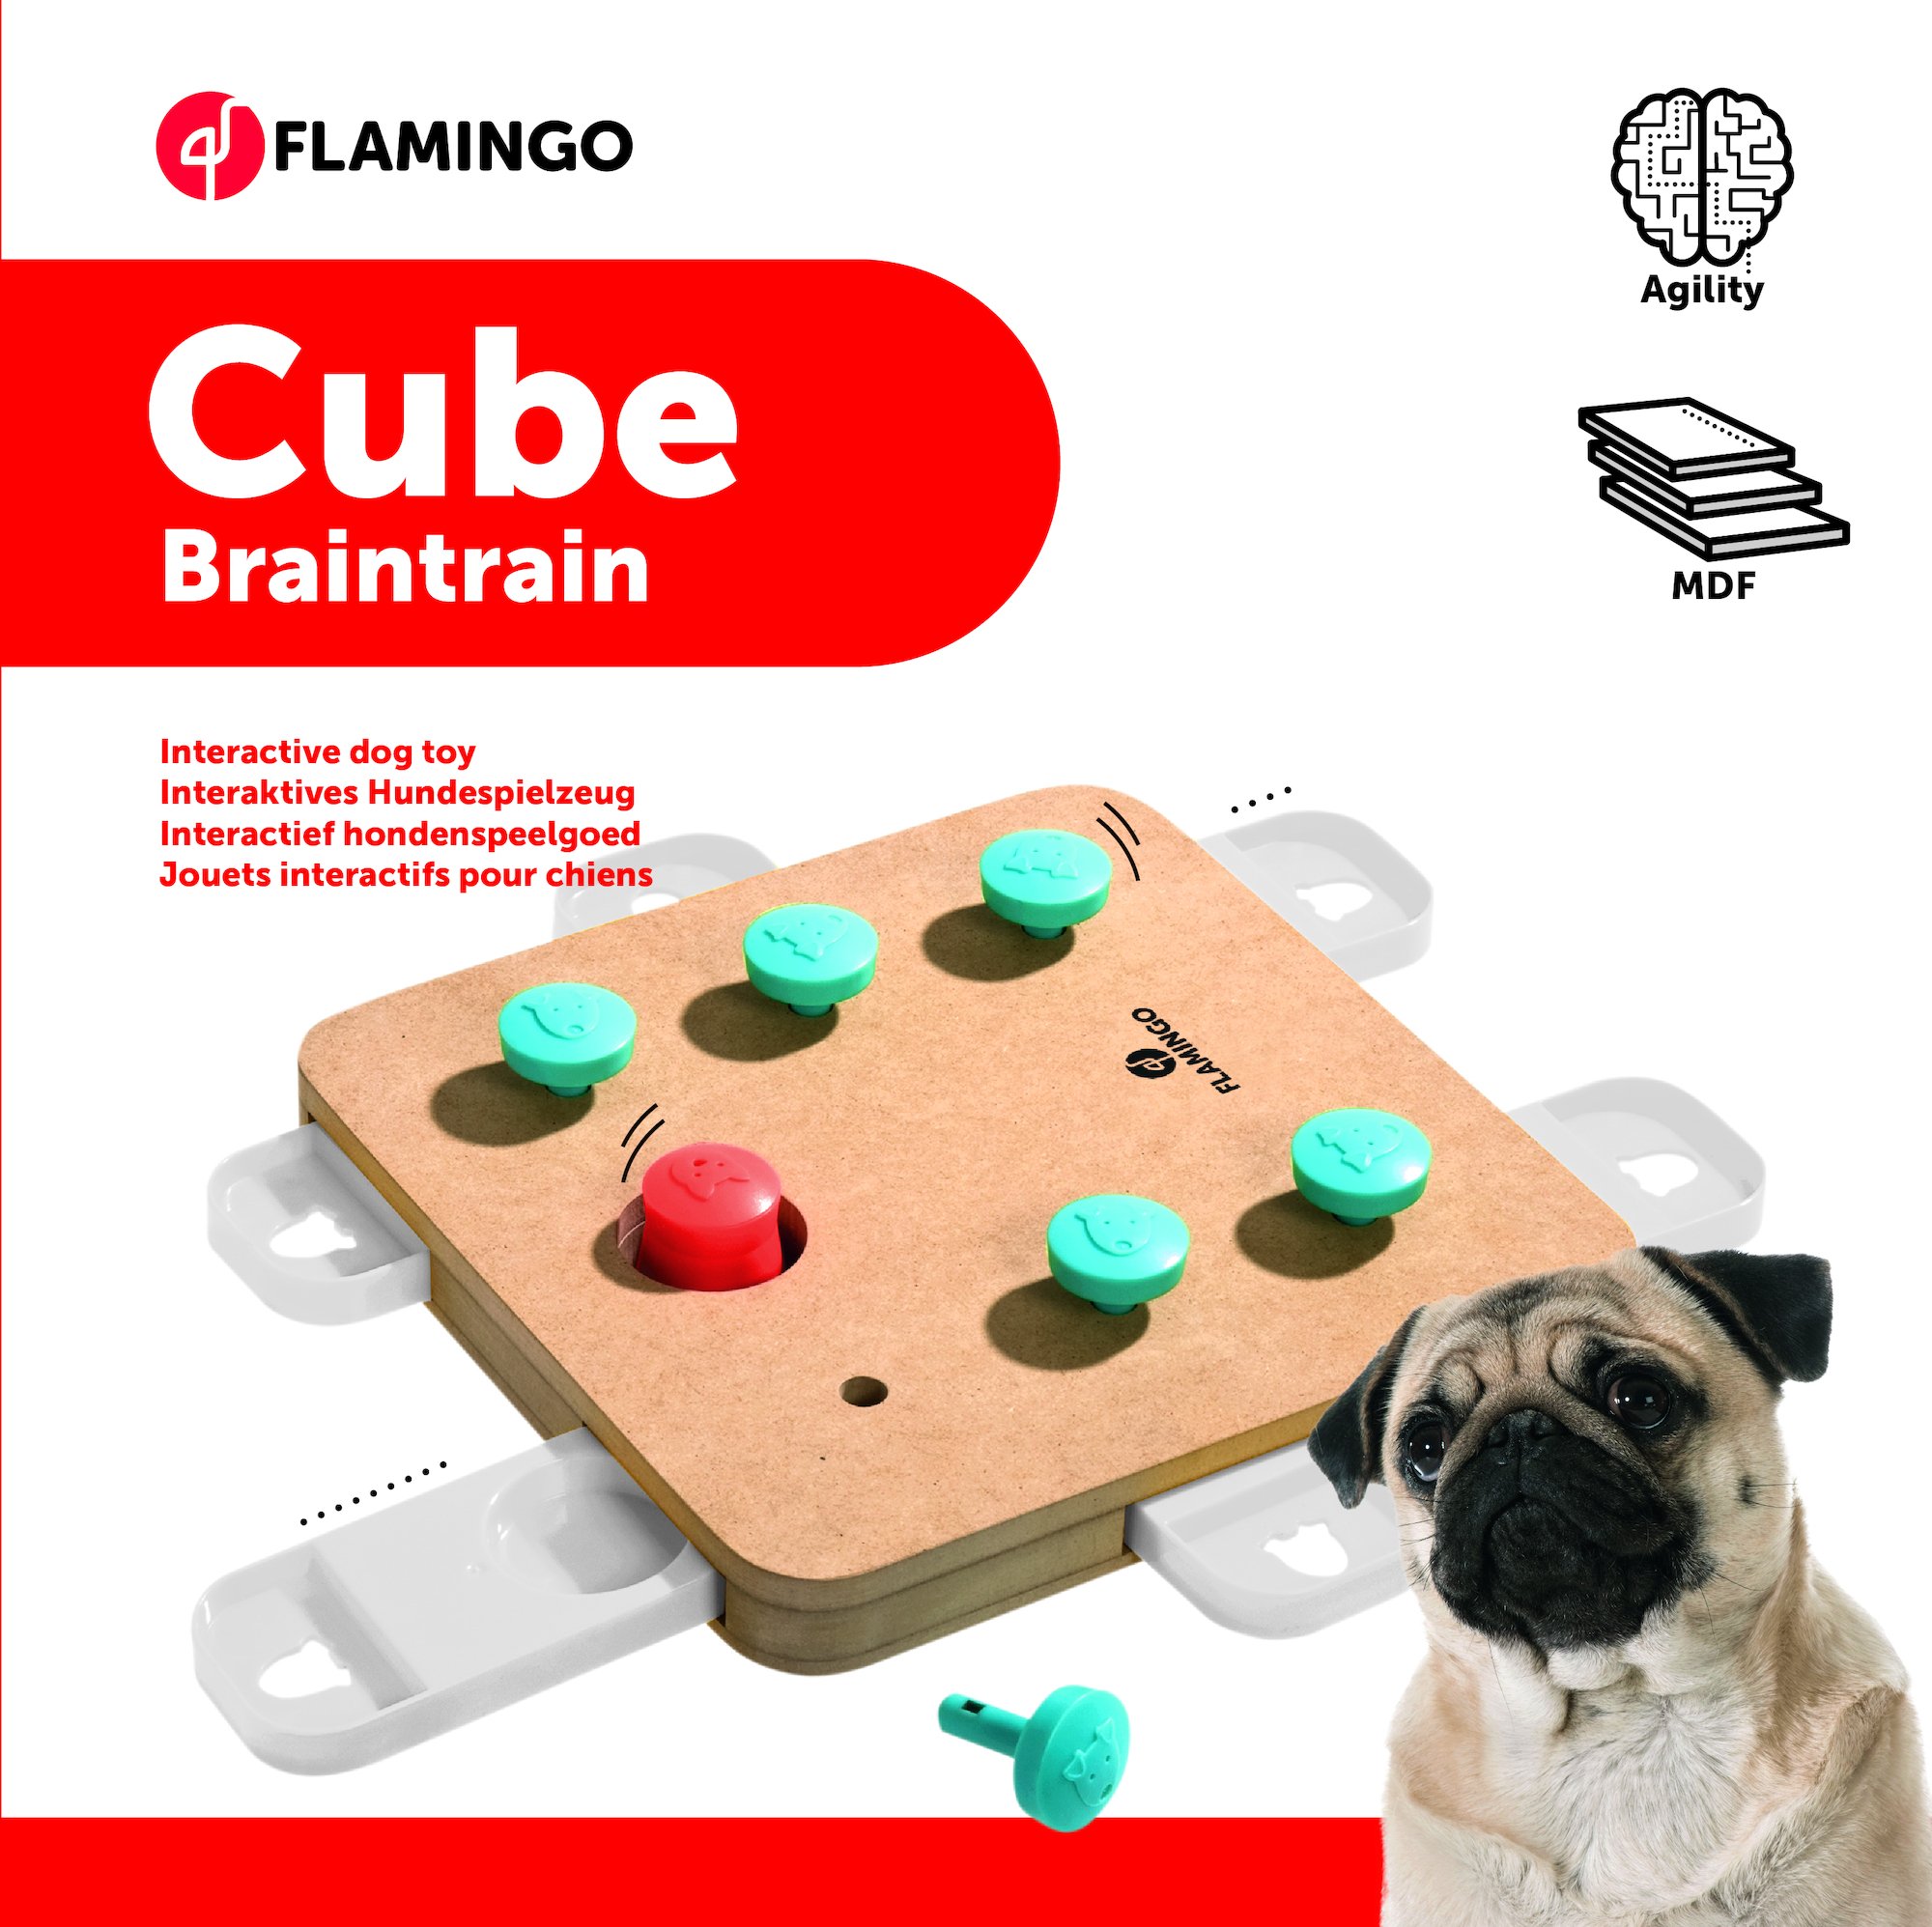 CUBE Flamingo, giocattolo intelligente e pensante per cani